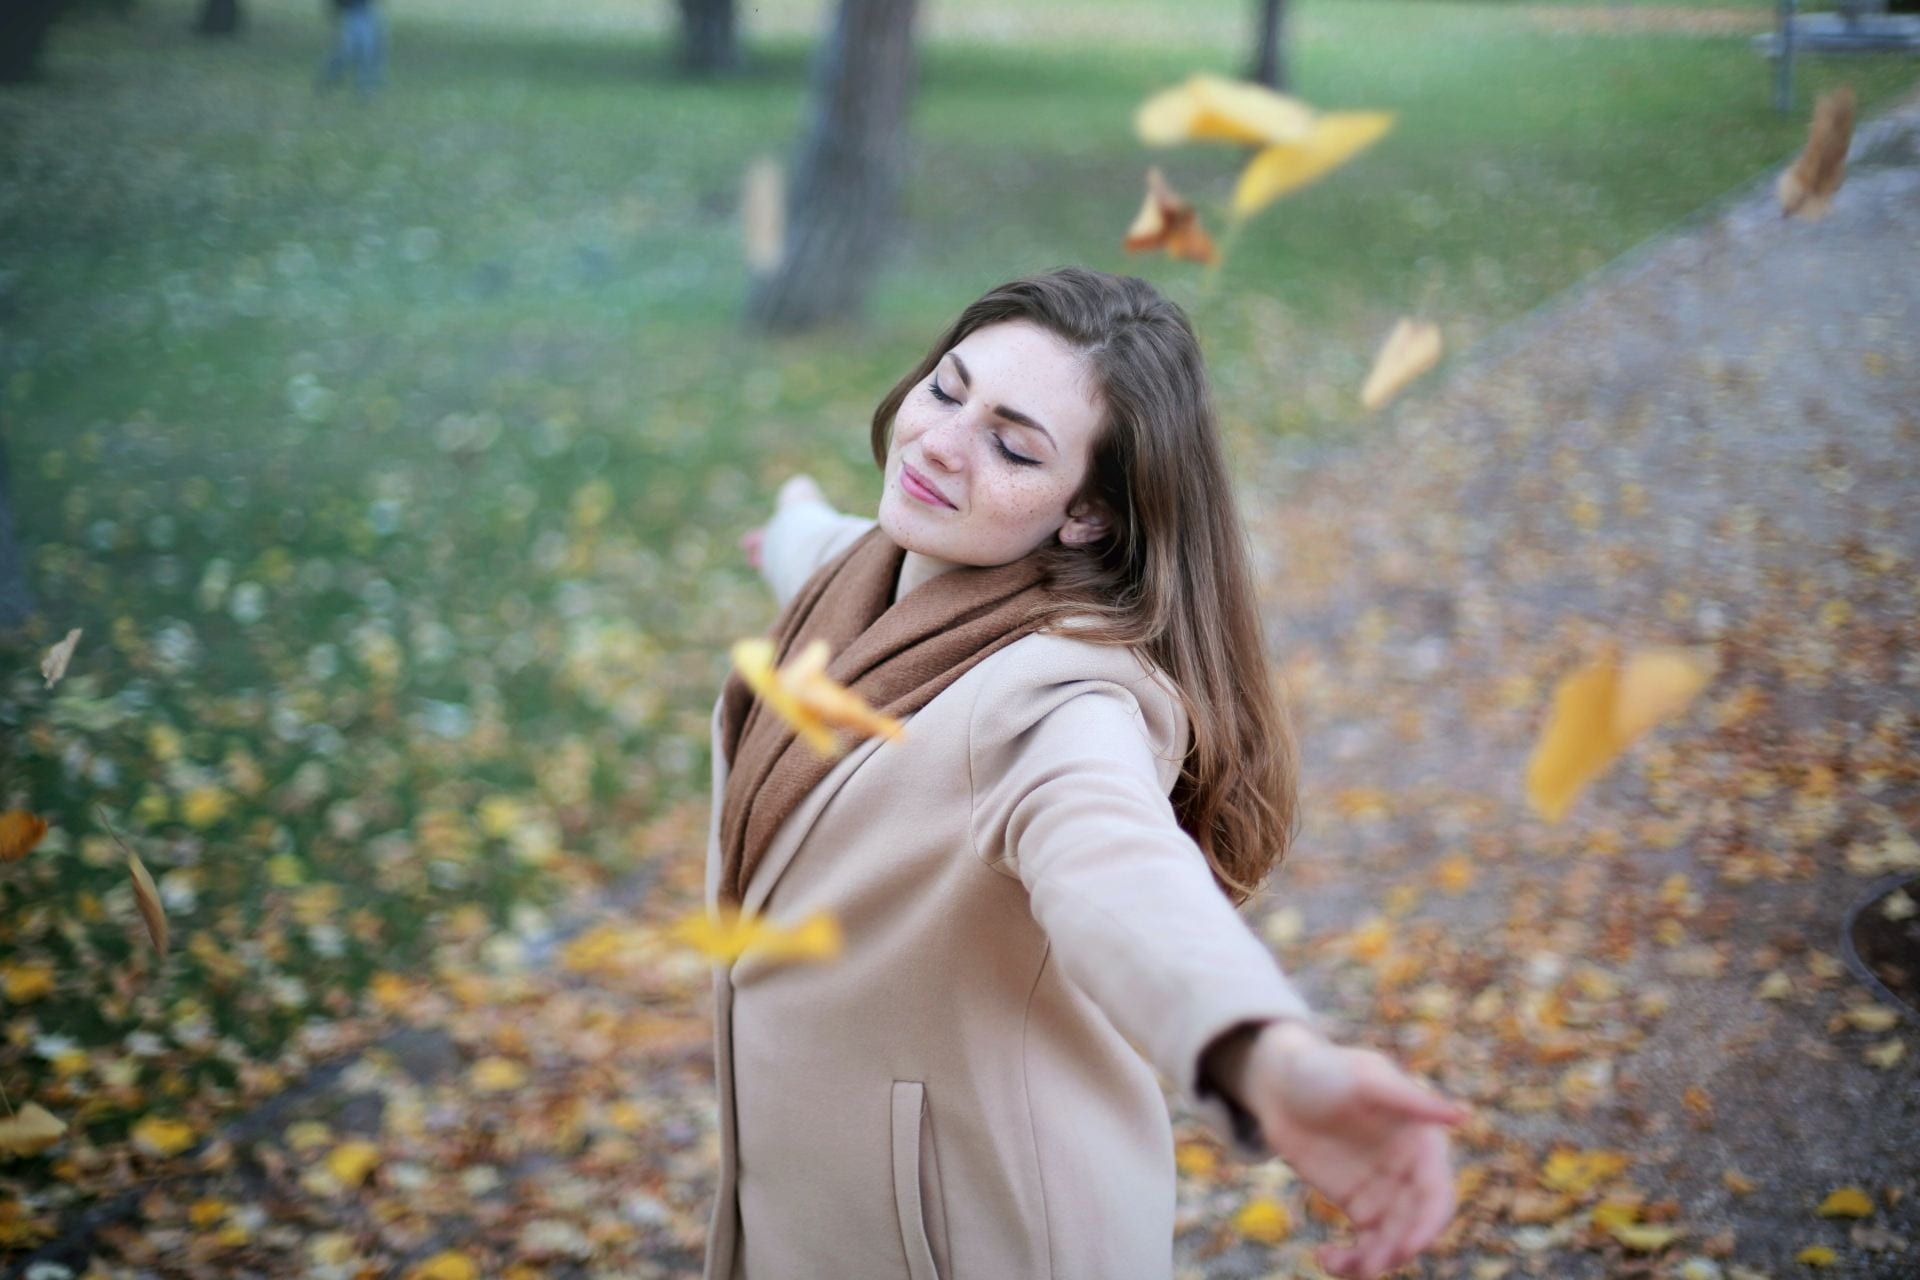 Woman outside in falling leaves